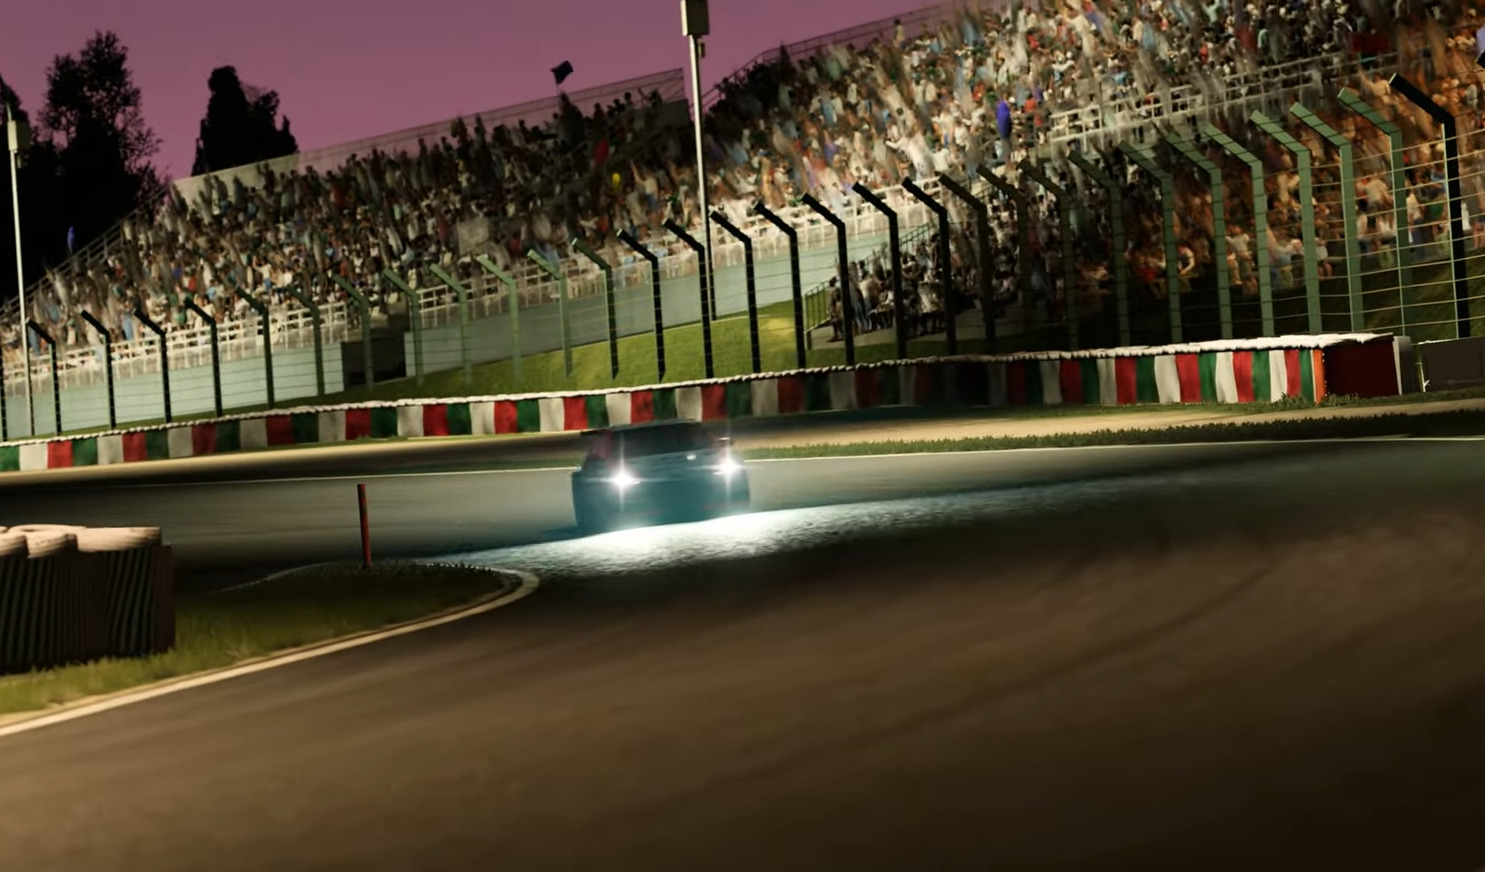 Forza Motorsport - Circuito de Suzuka capas redes